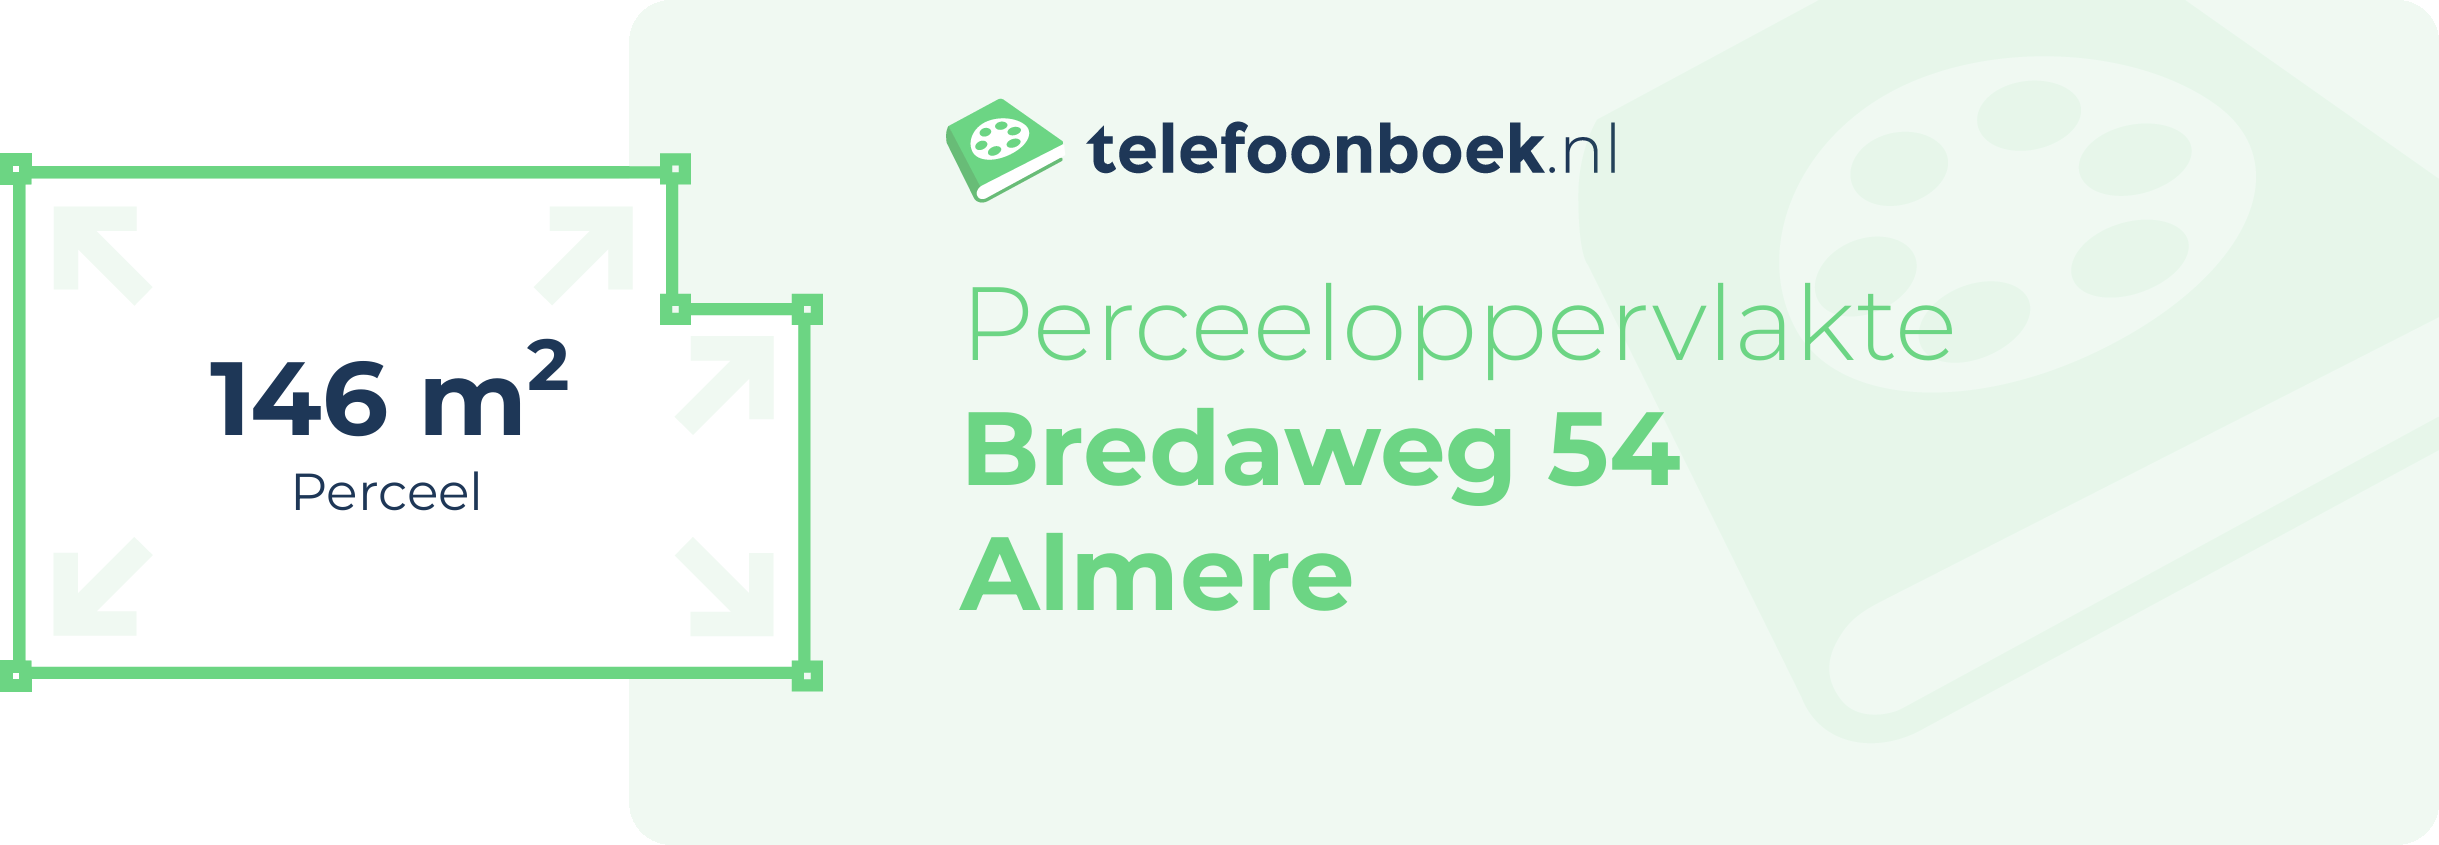 Perceeloppervlakte Bredaweg 54 Almere